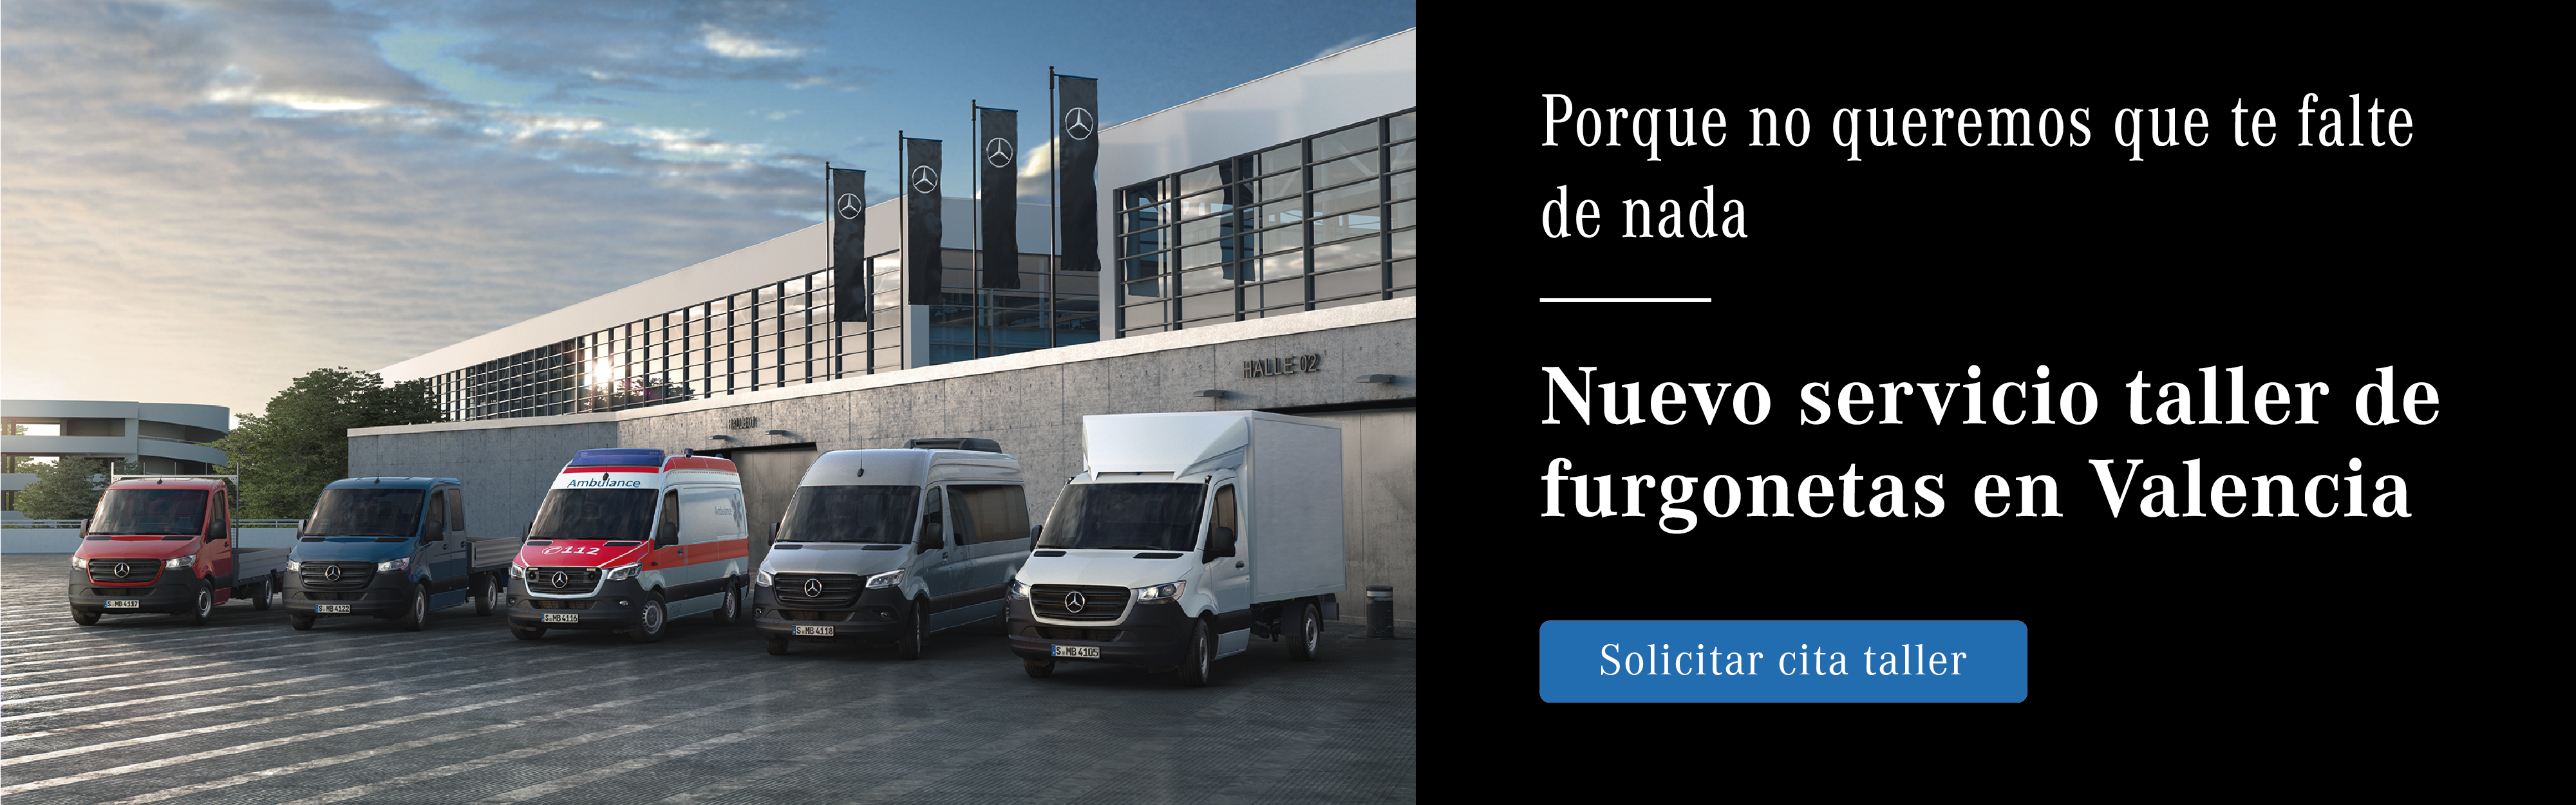 nuevo servicio taller furgonetas en valencia